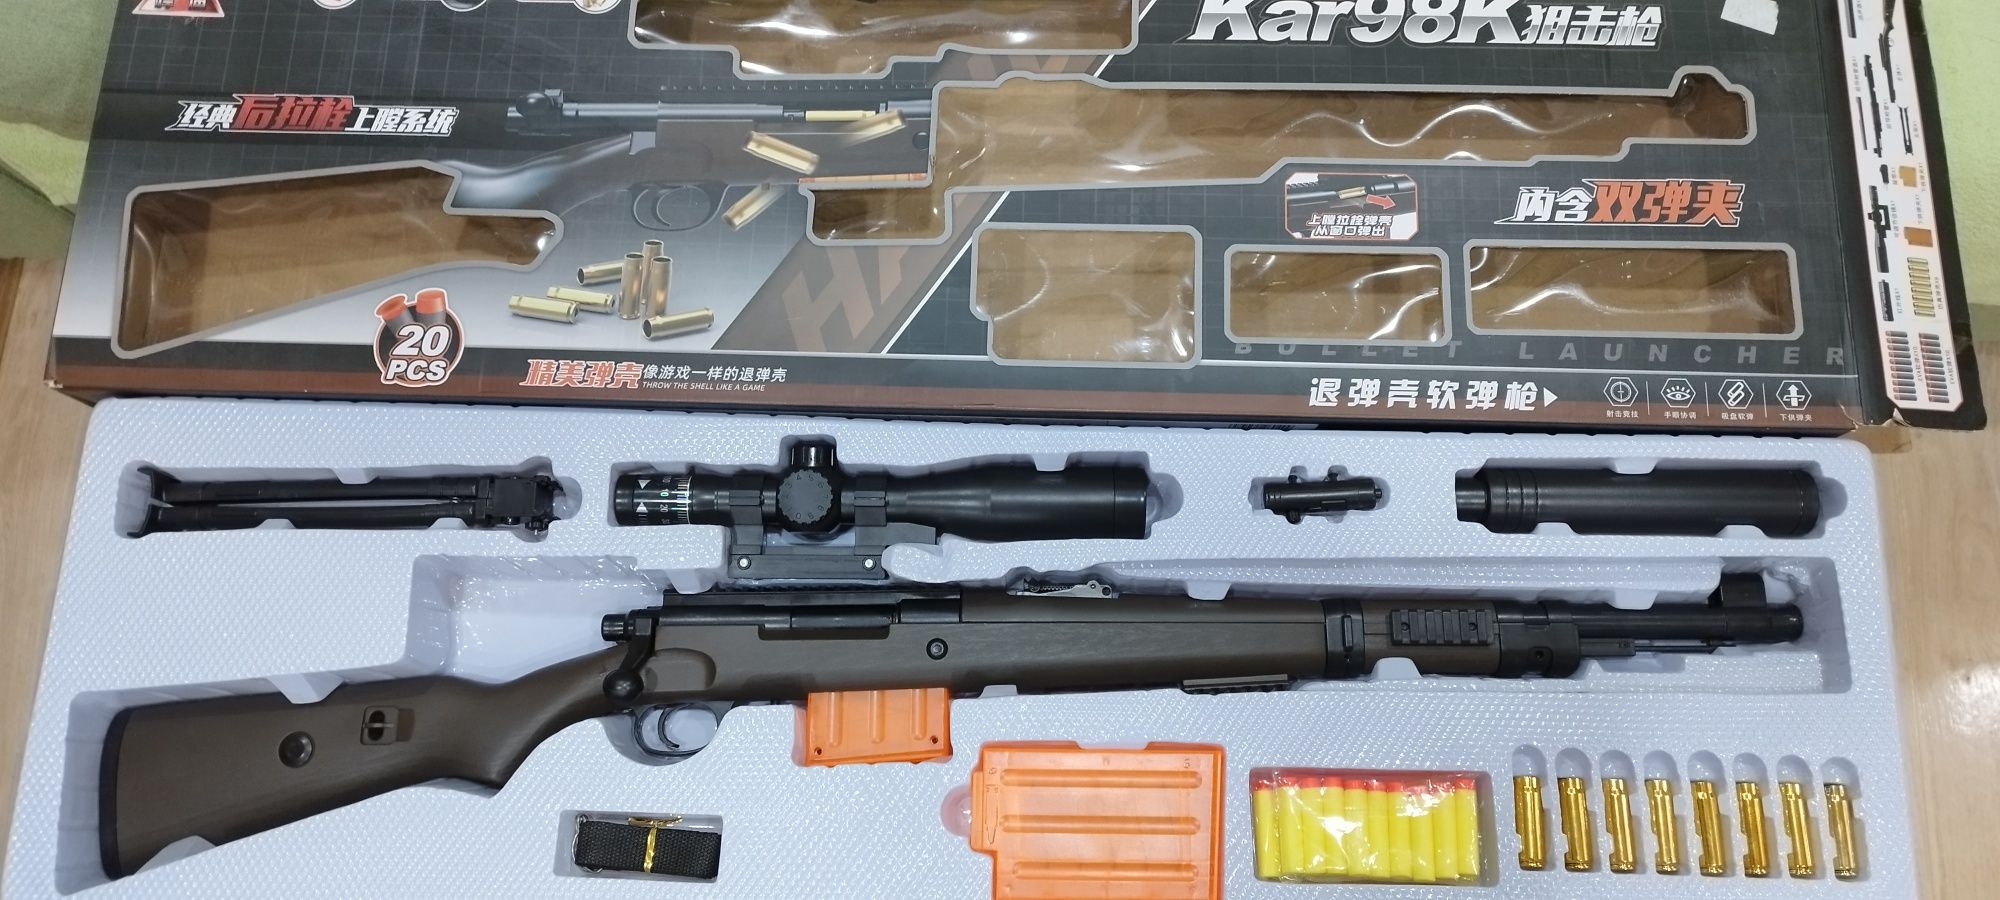 Продам новую детскую орбизган винтовку Kar98k